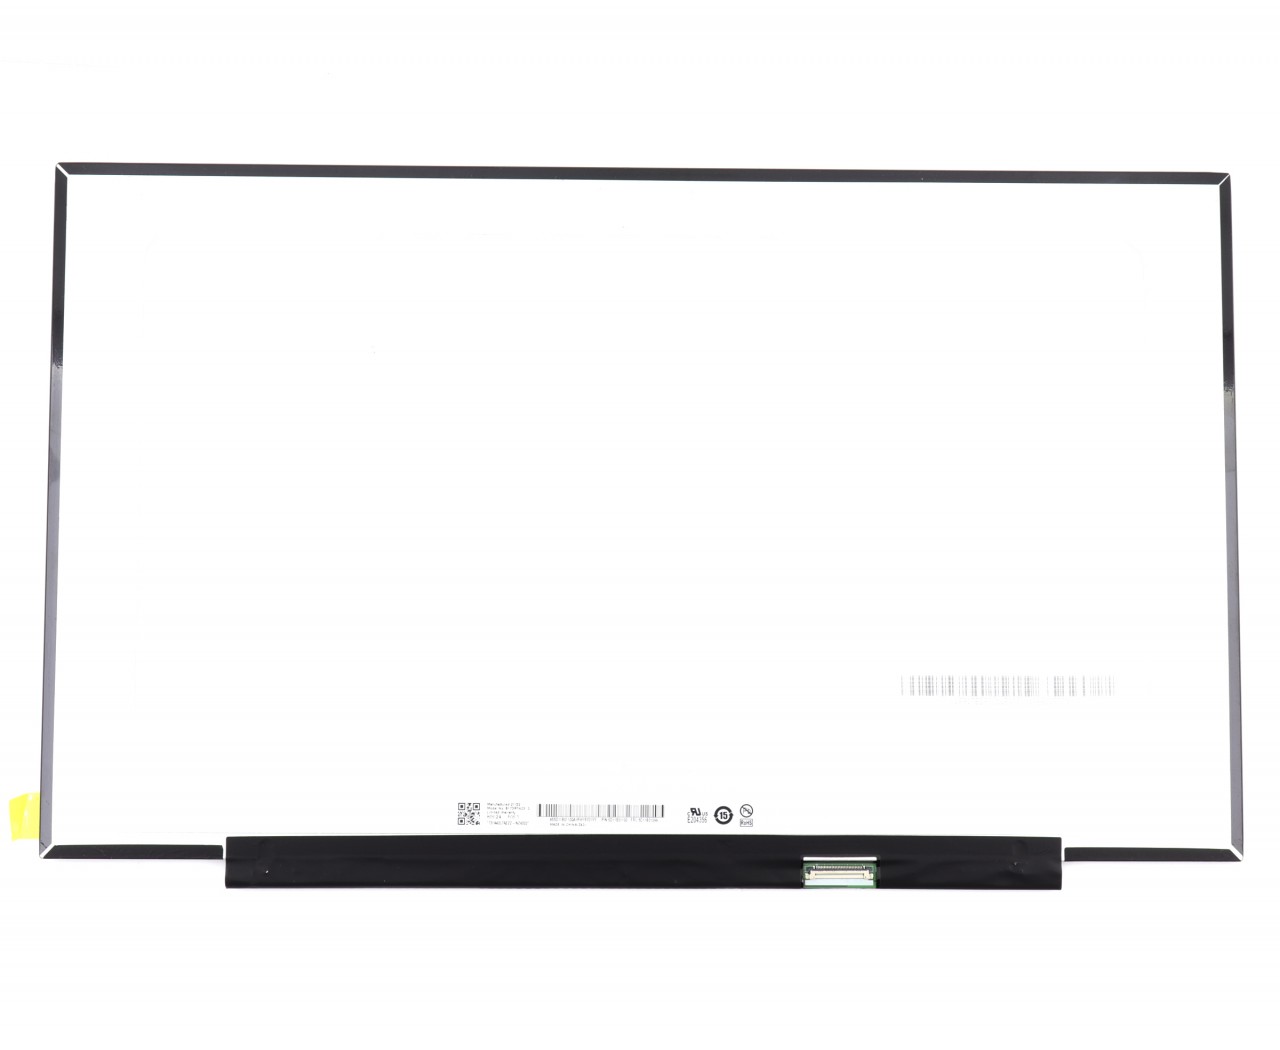 Display laptop MSI GS75 Ecran 17.3 1600x900 30 pini eDP 60Hz fara prinderi